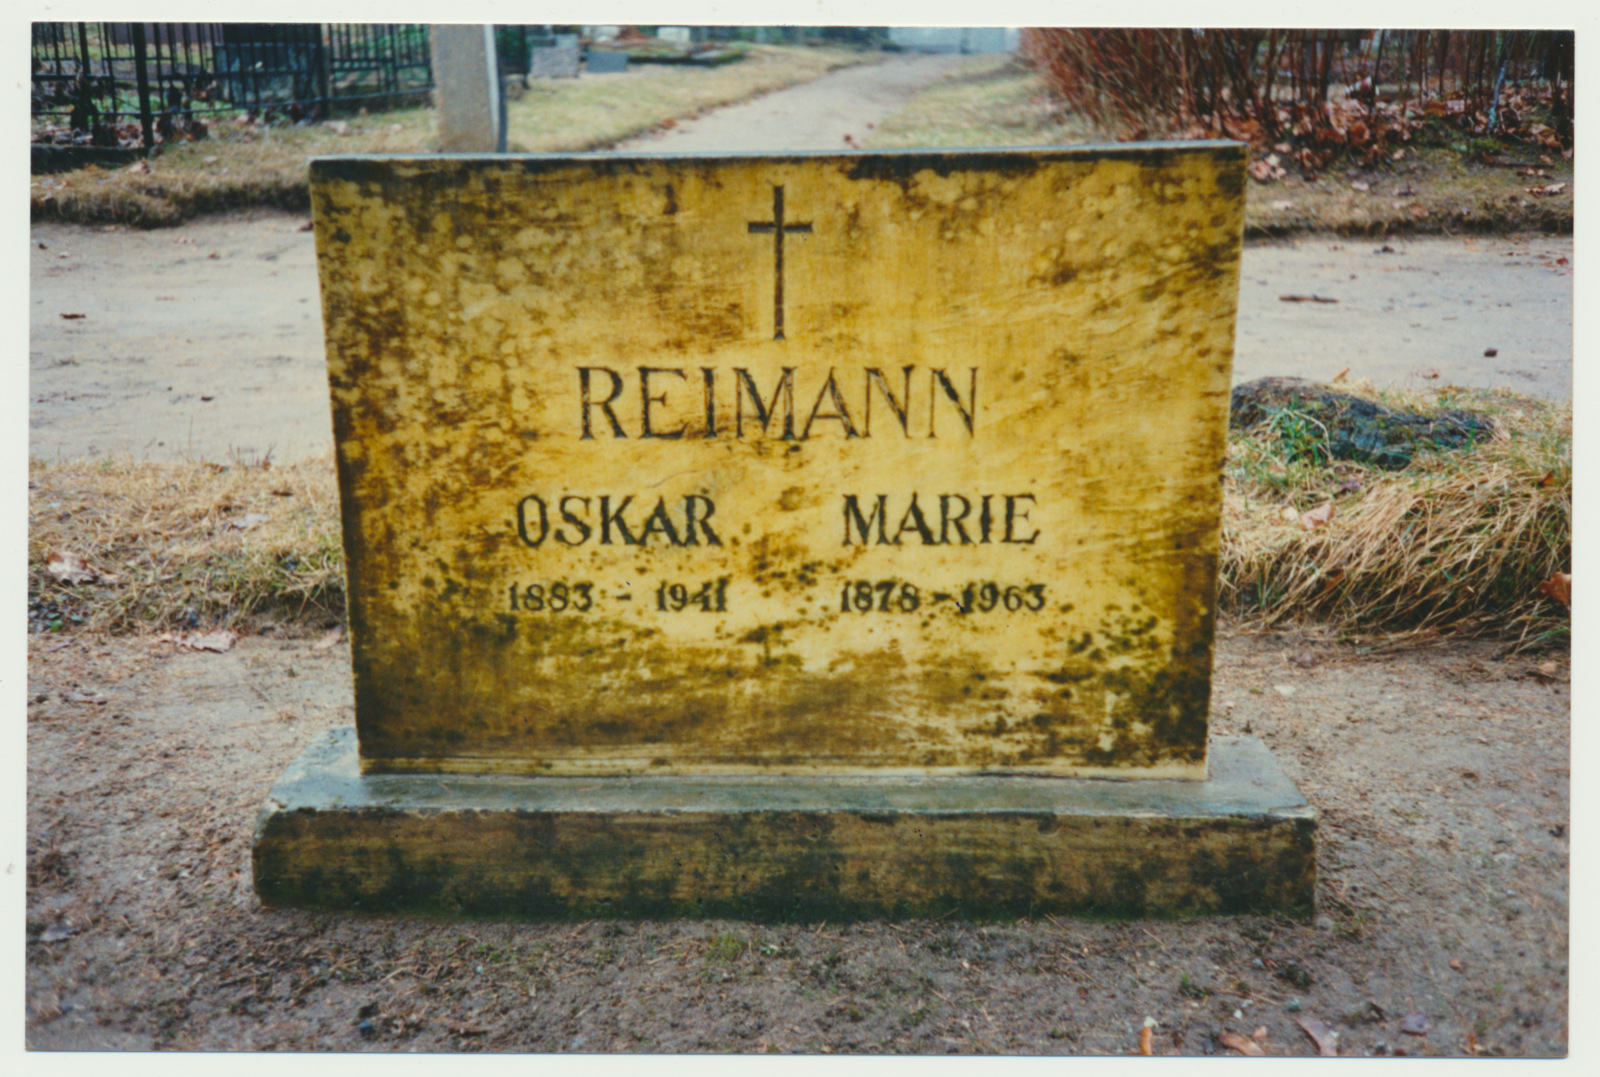 foto, Viljandimaa, Suure-Jaani, Gustav-Oskar Reimanni hauaplats, 1994, foto J. Pihlak, värviline